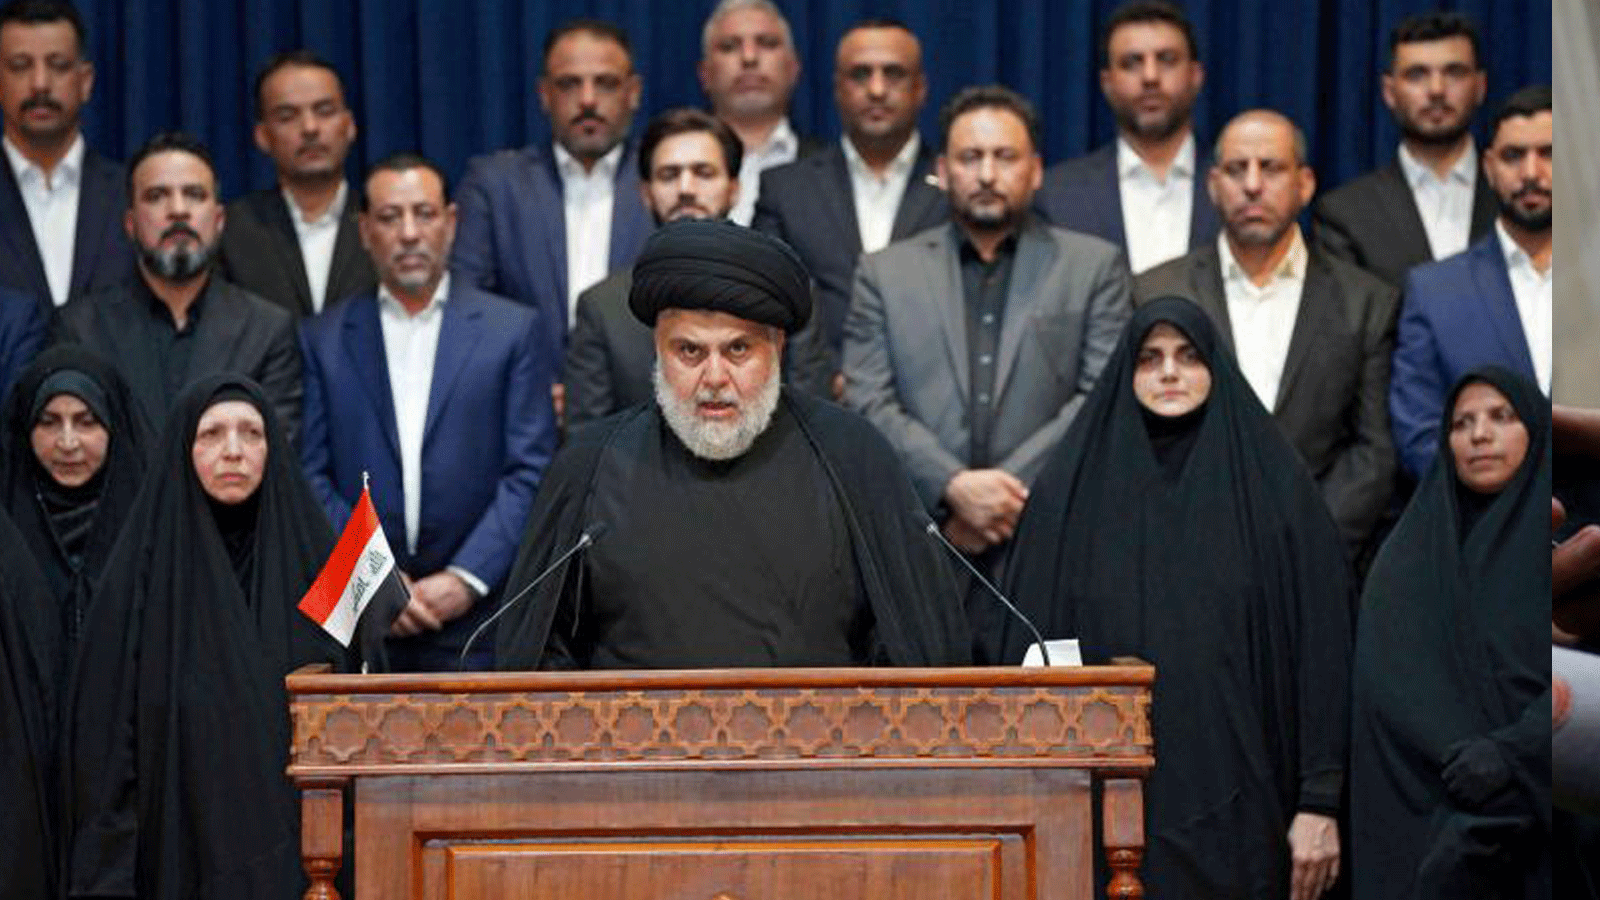  رئيس الكتلة الصدرية مقتدى الصدر يلقي خطابا في النجف، المدينة المقدسة الشيعية في وسط العراق حيث يقيم. 27 آب/أغسطس 2021.